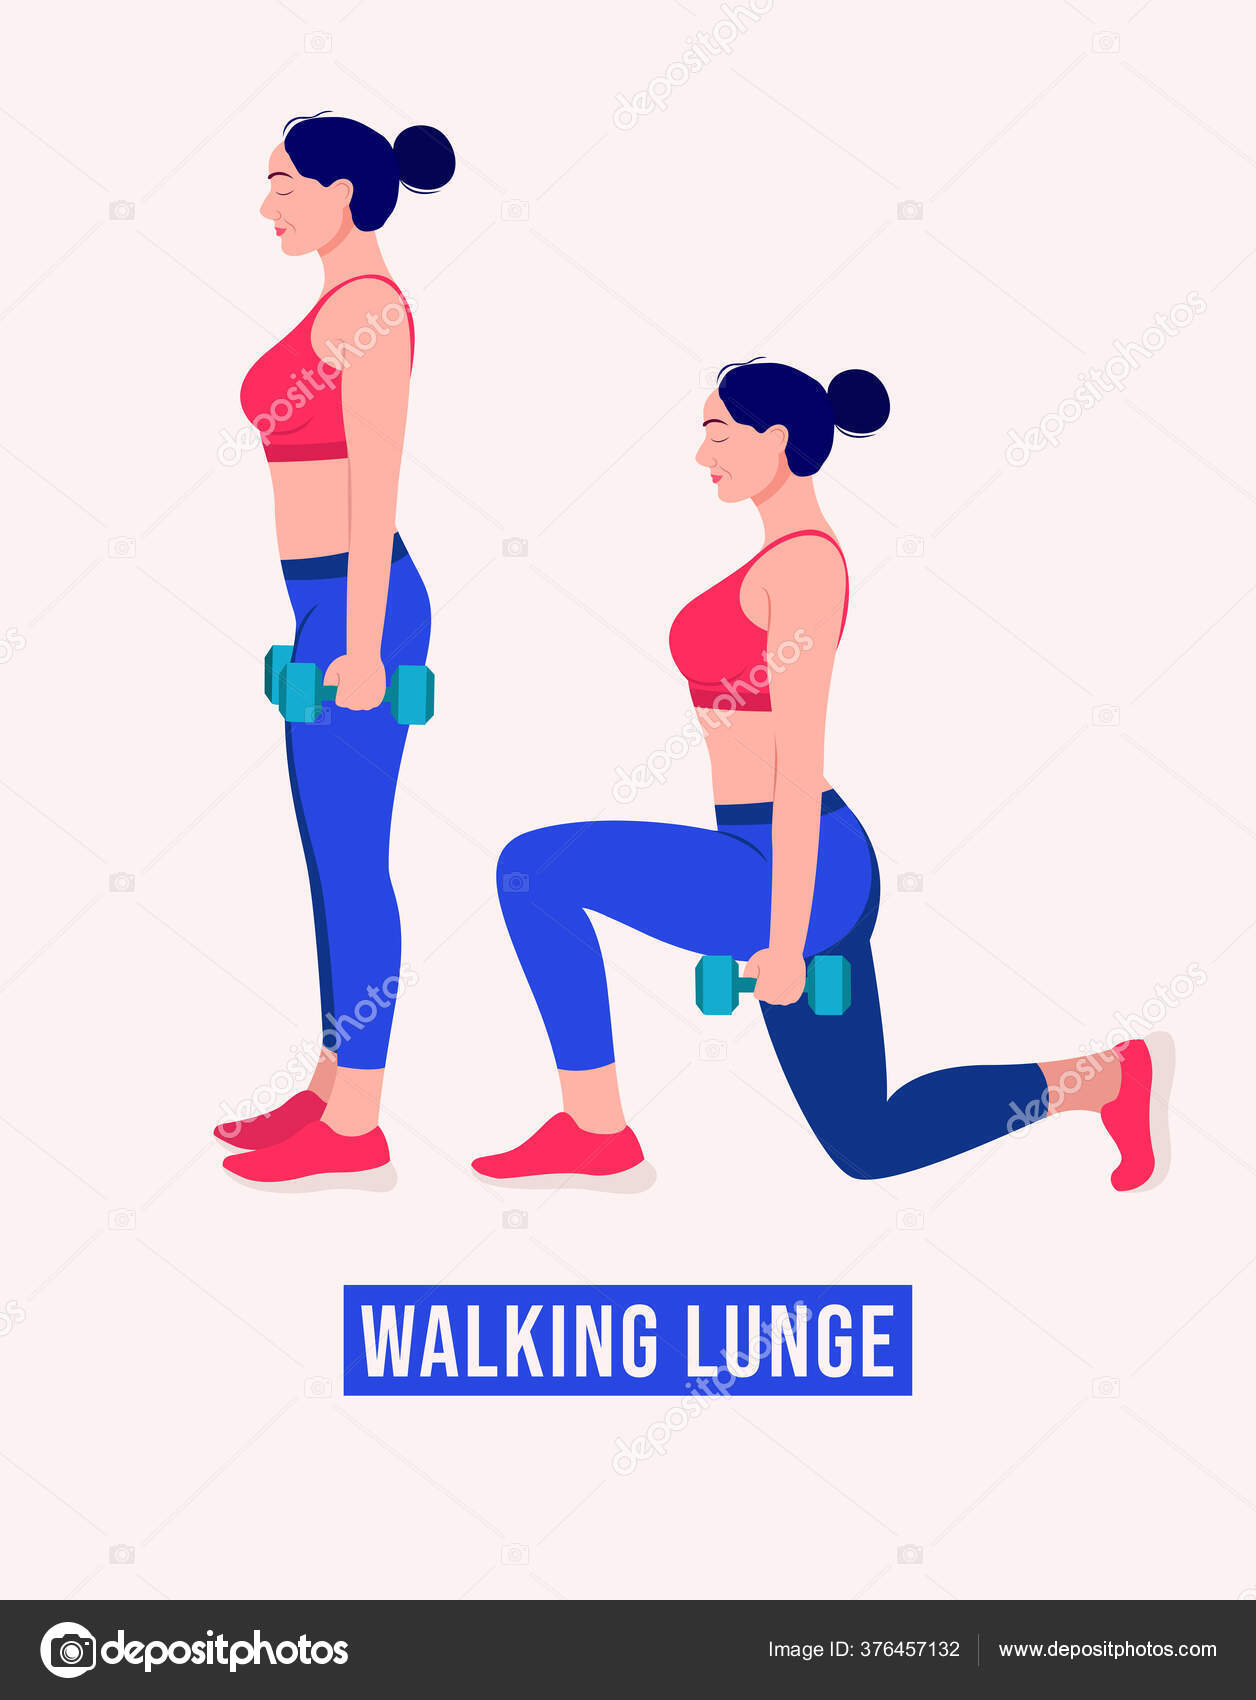 walking lunge